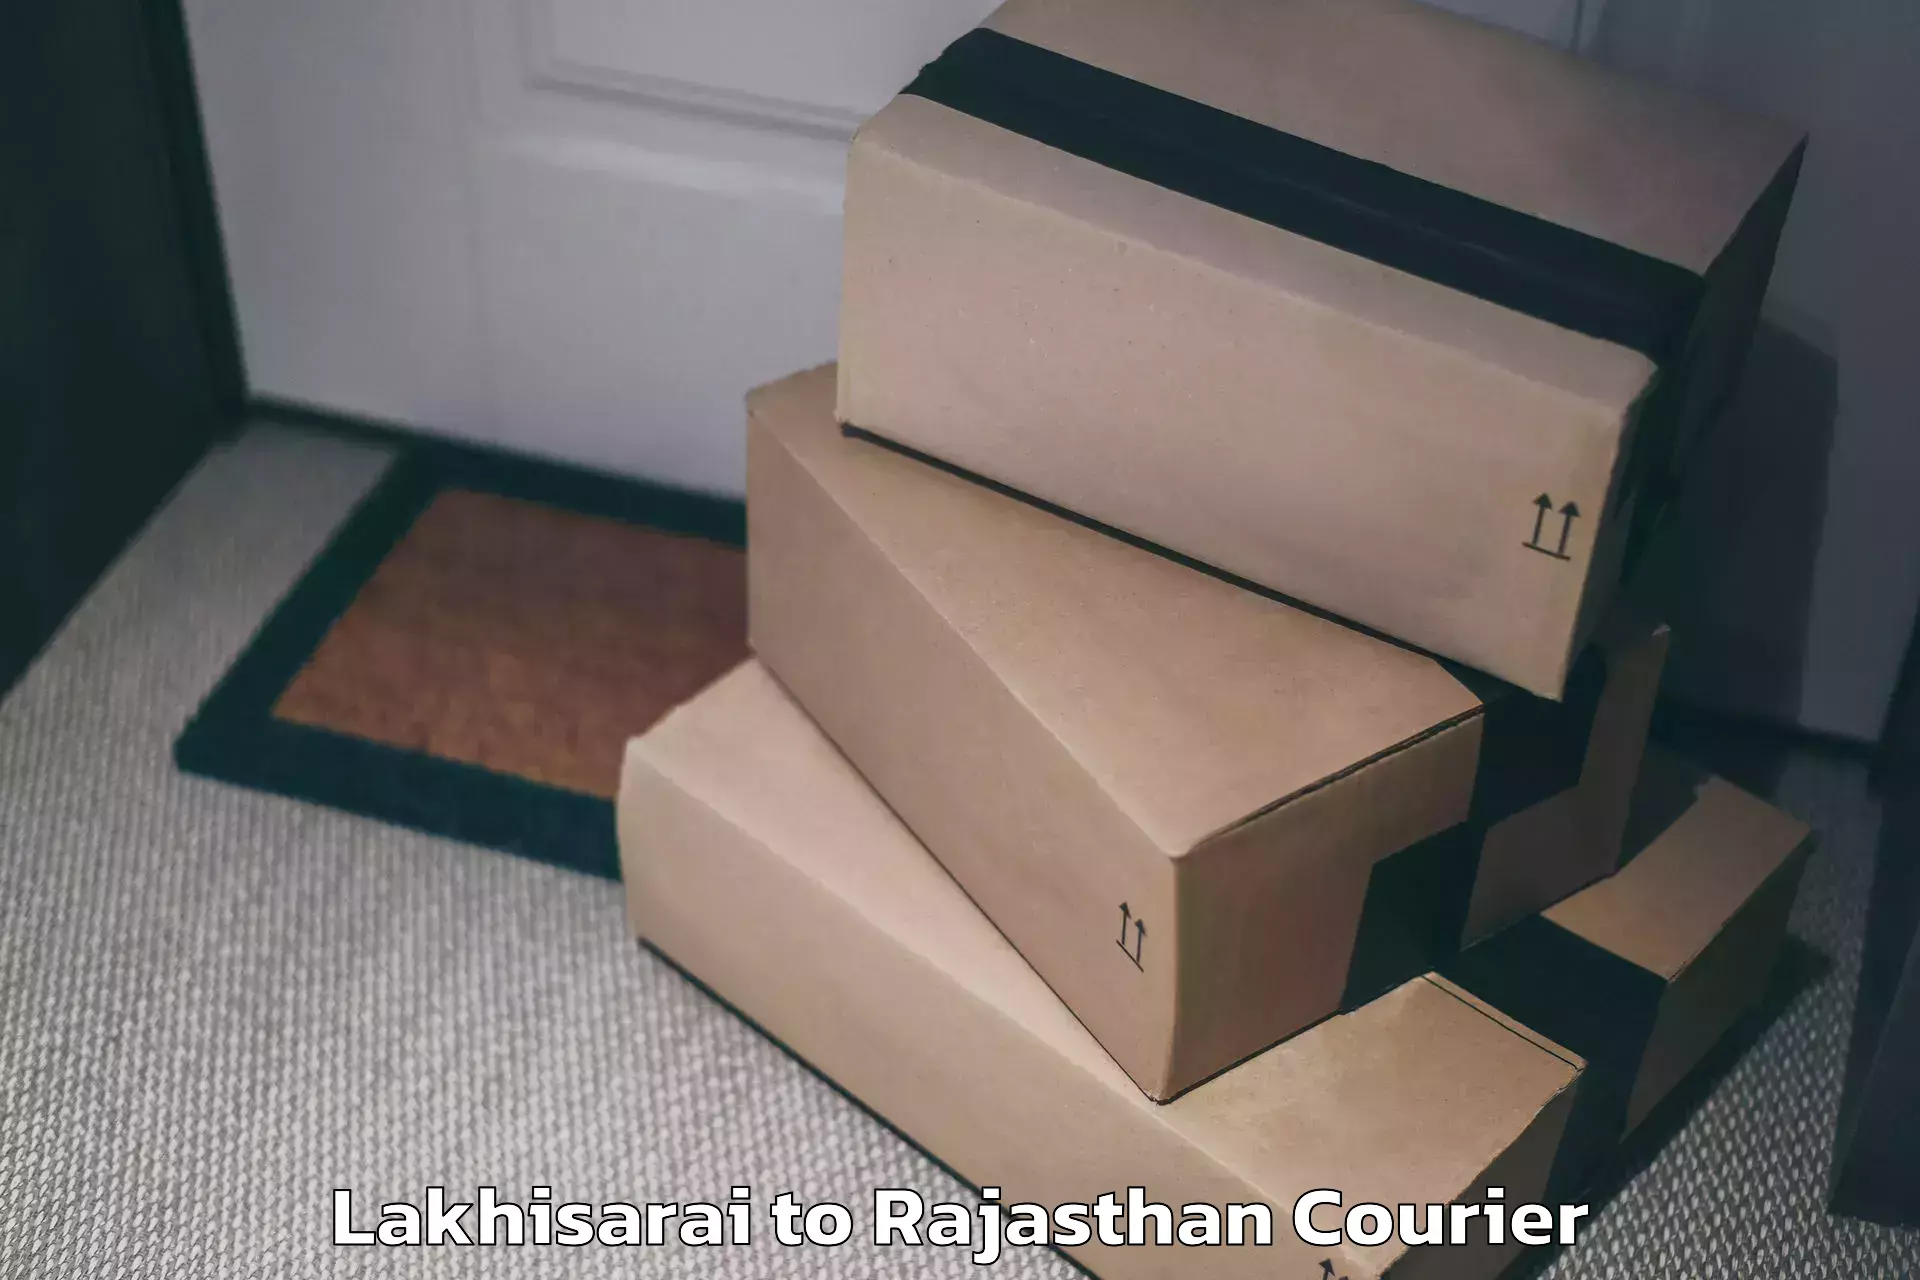 Premium luggage delivery Lakhisarai to Mathania